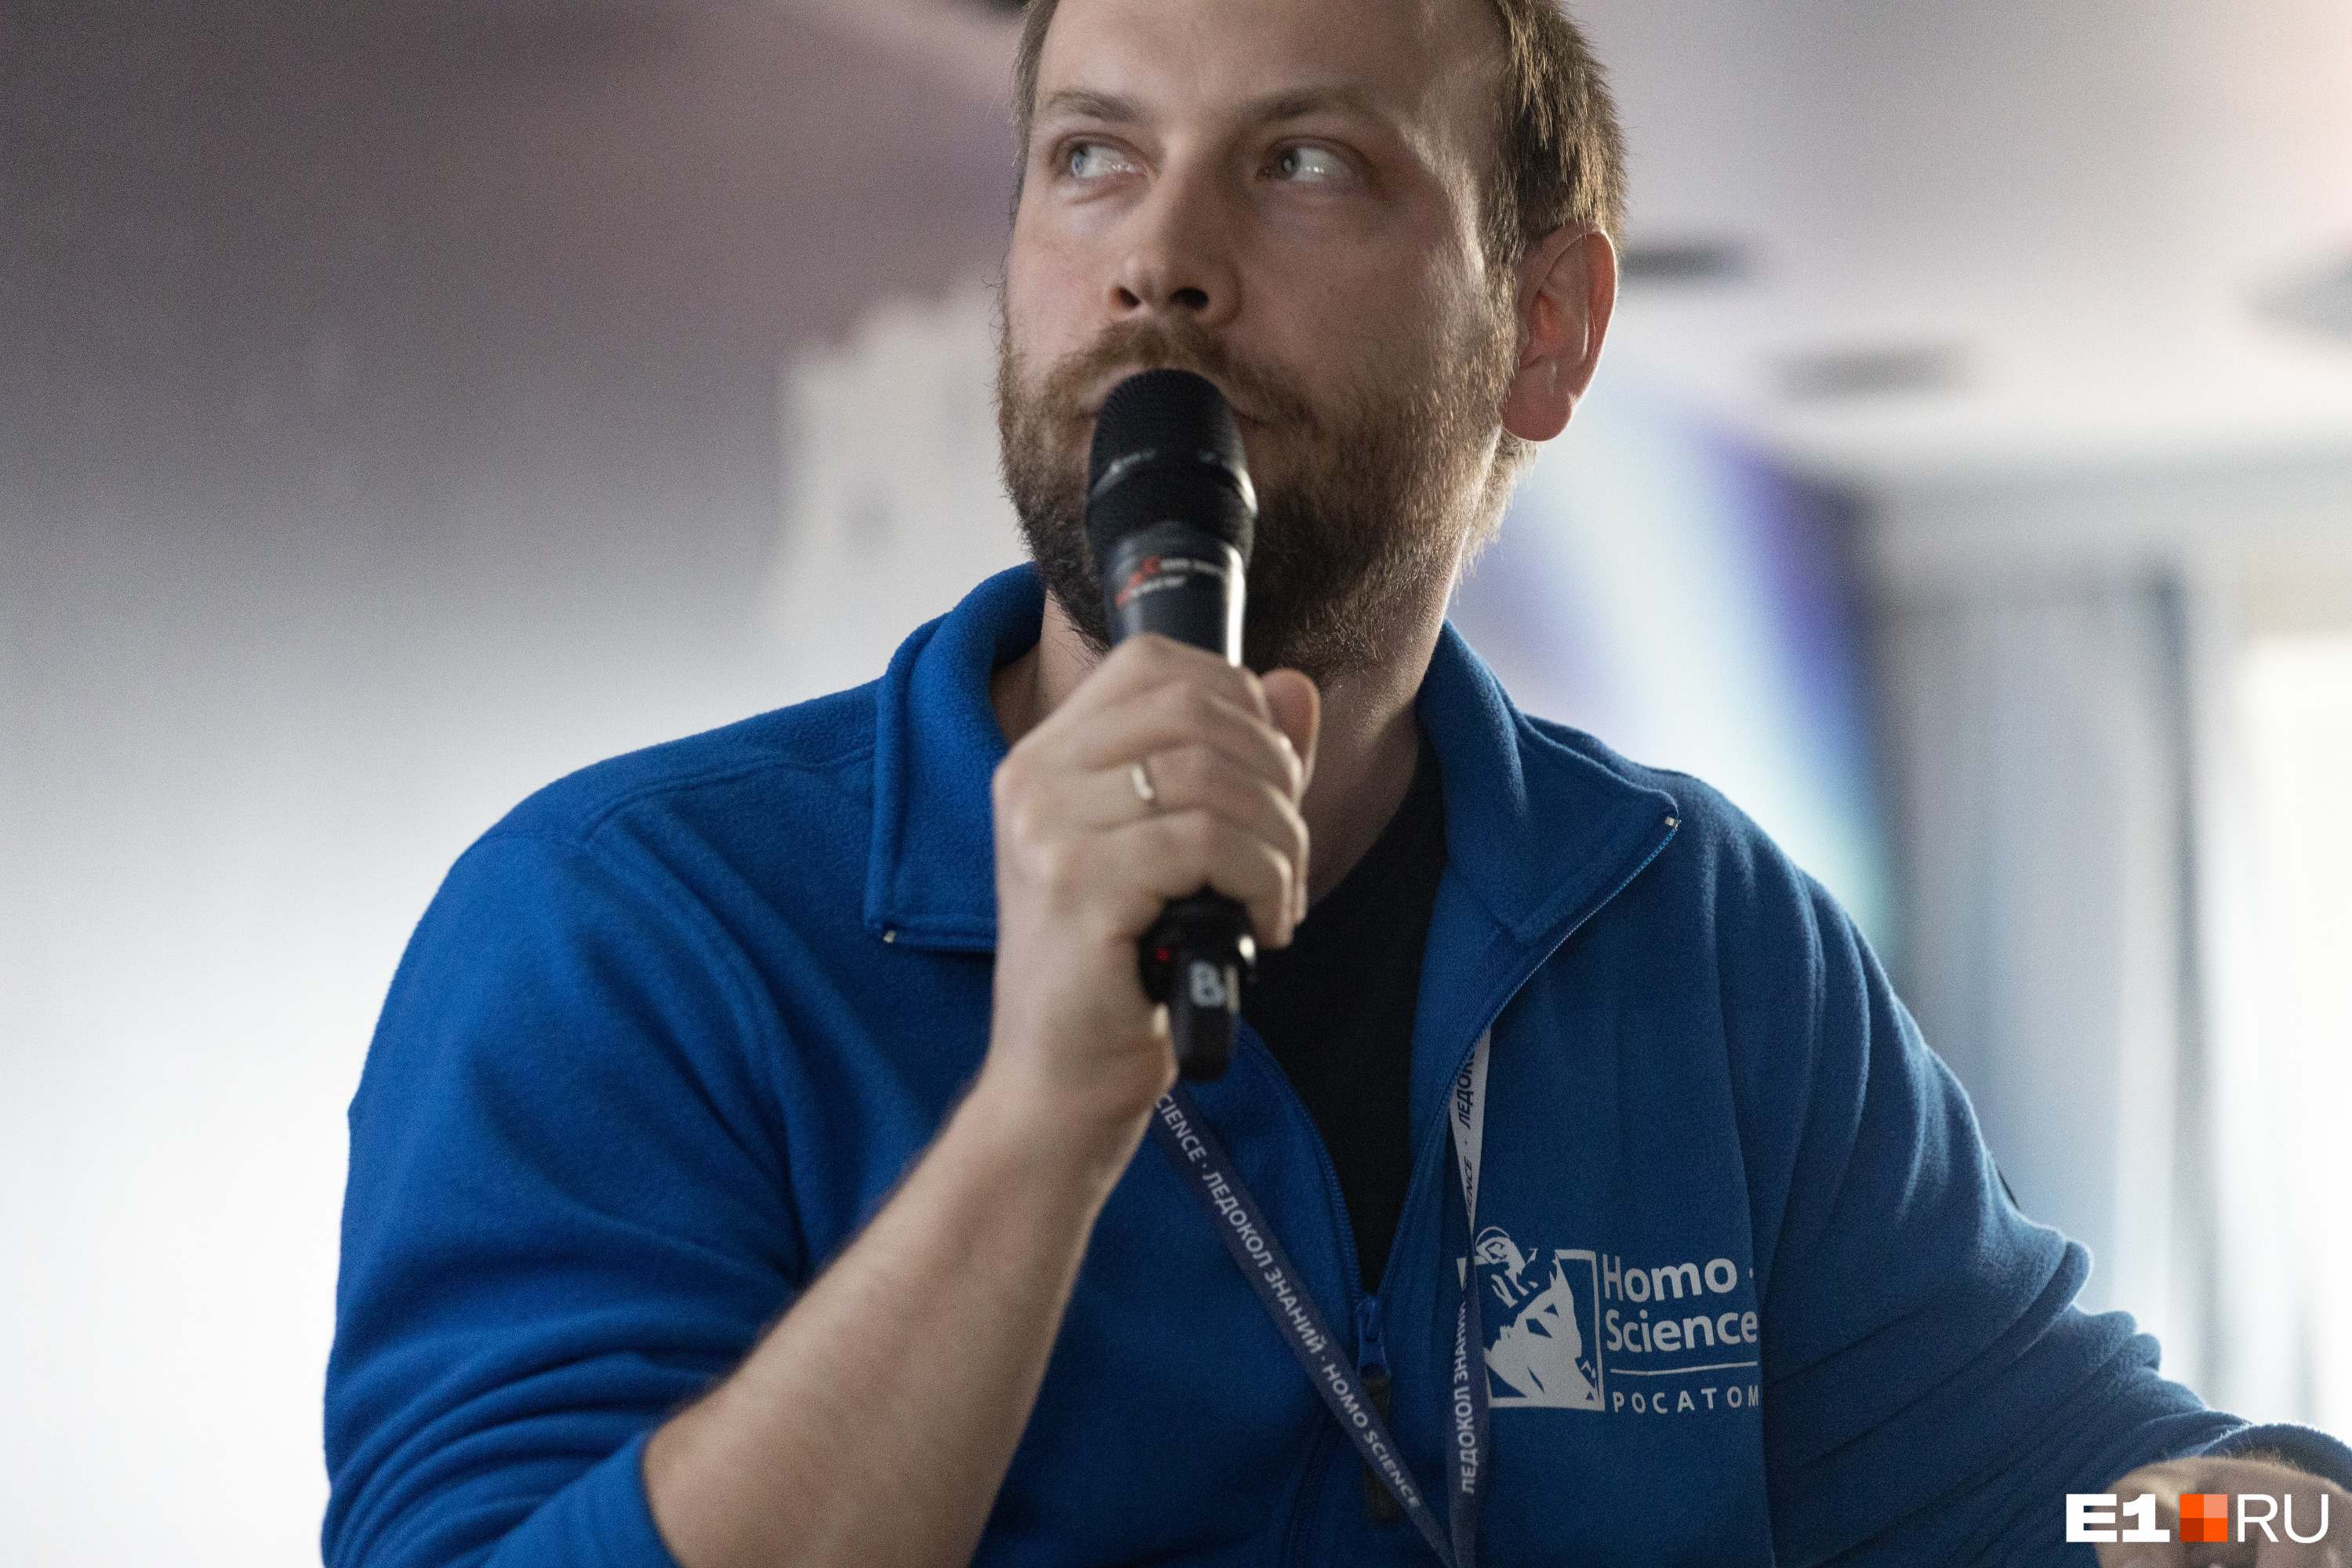 Дмитрий Горчаков — физик-ядерщик, научный журналист